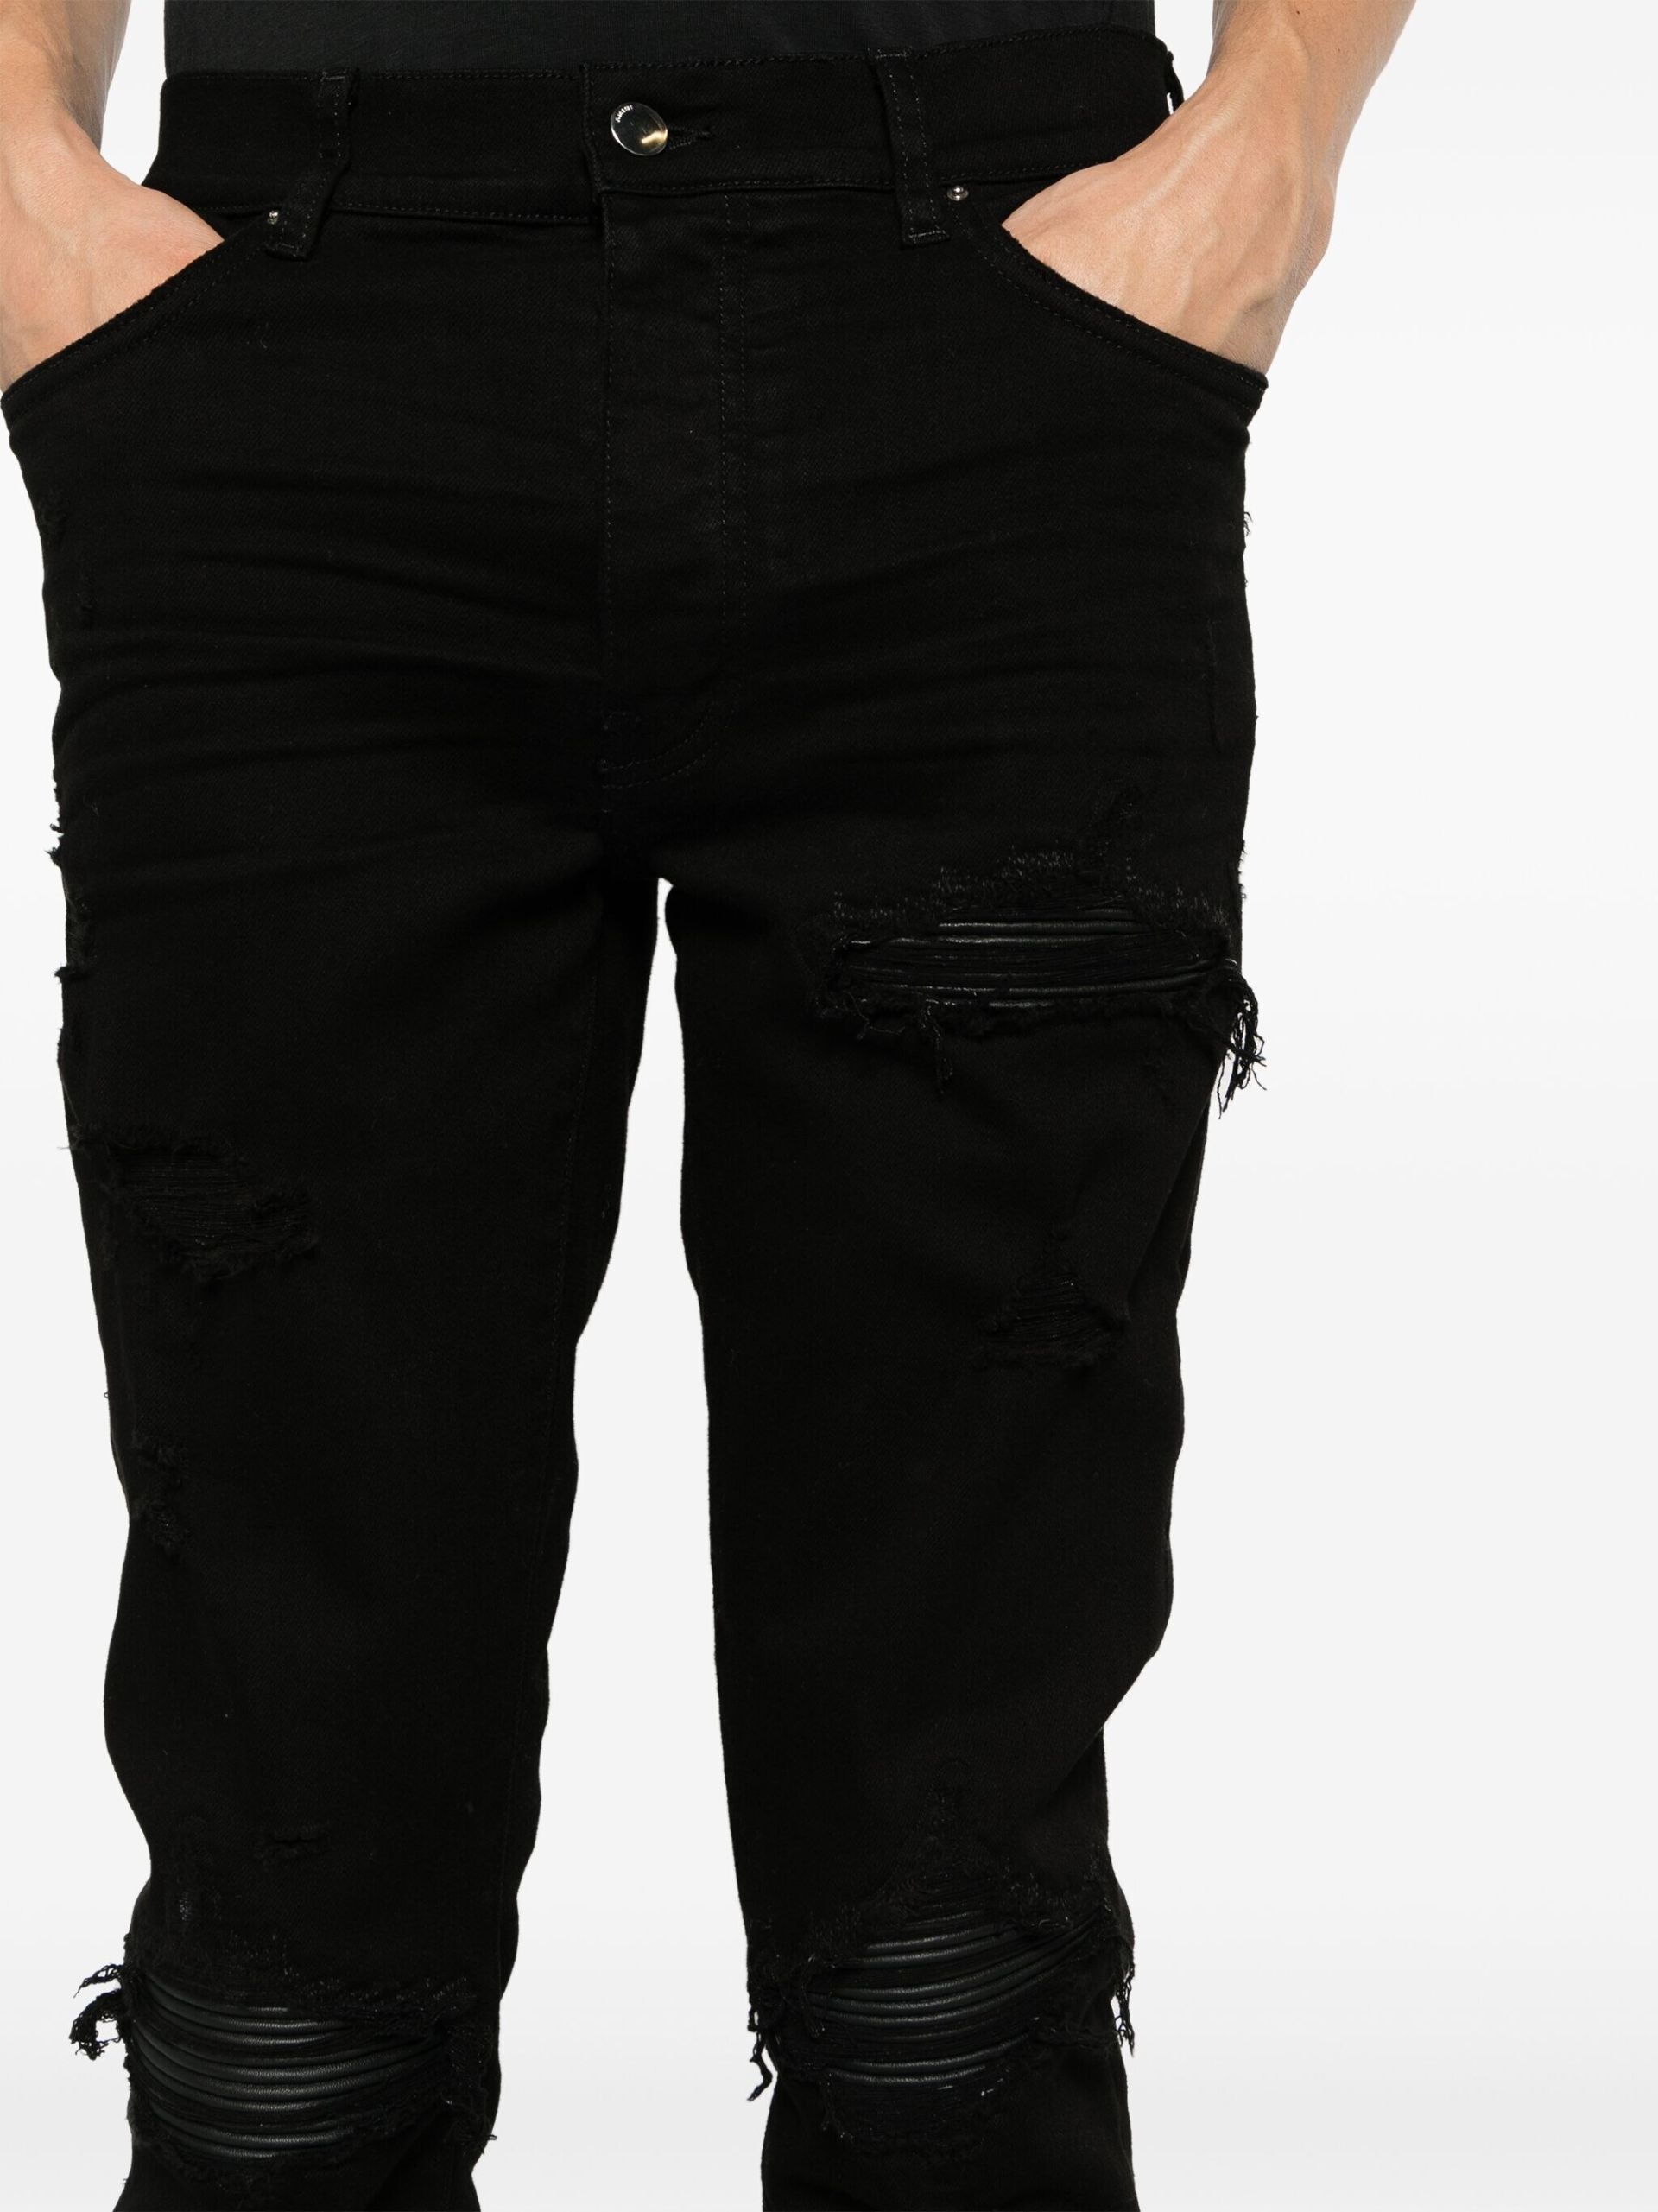 Black Distressed Skinny Cut Jeans - 5